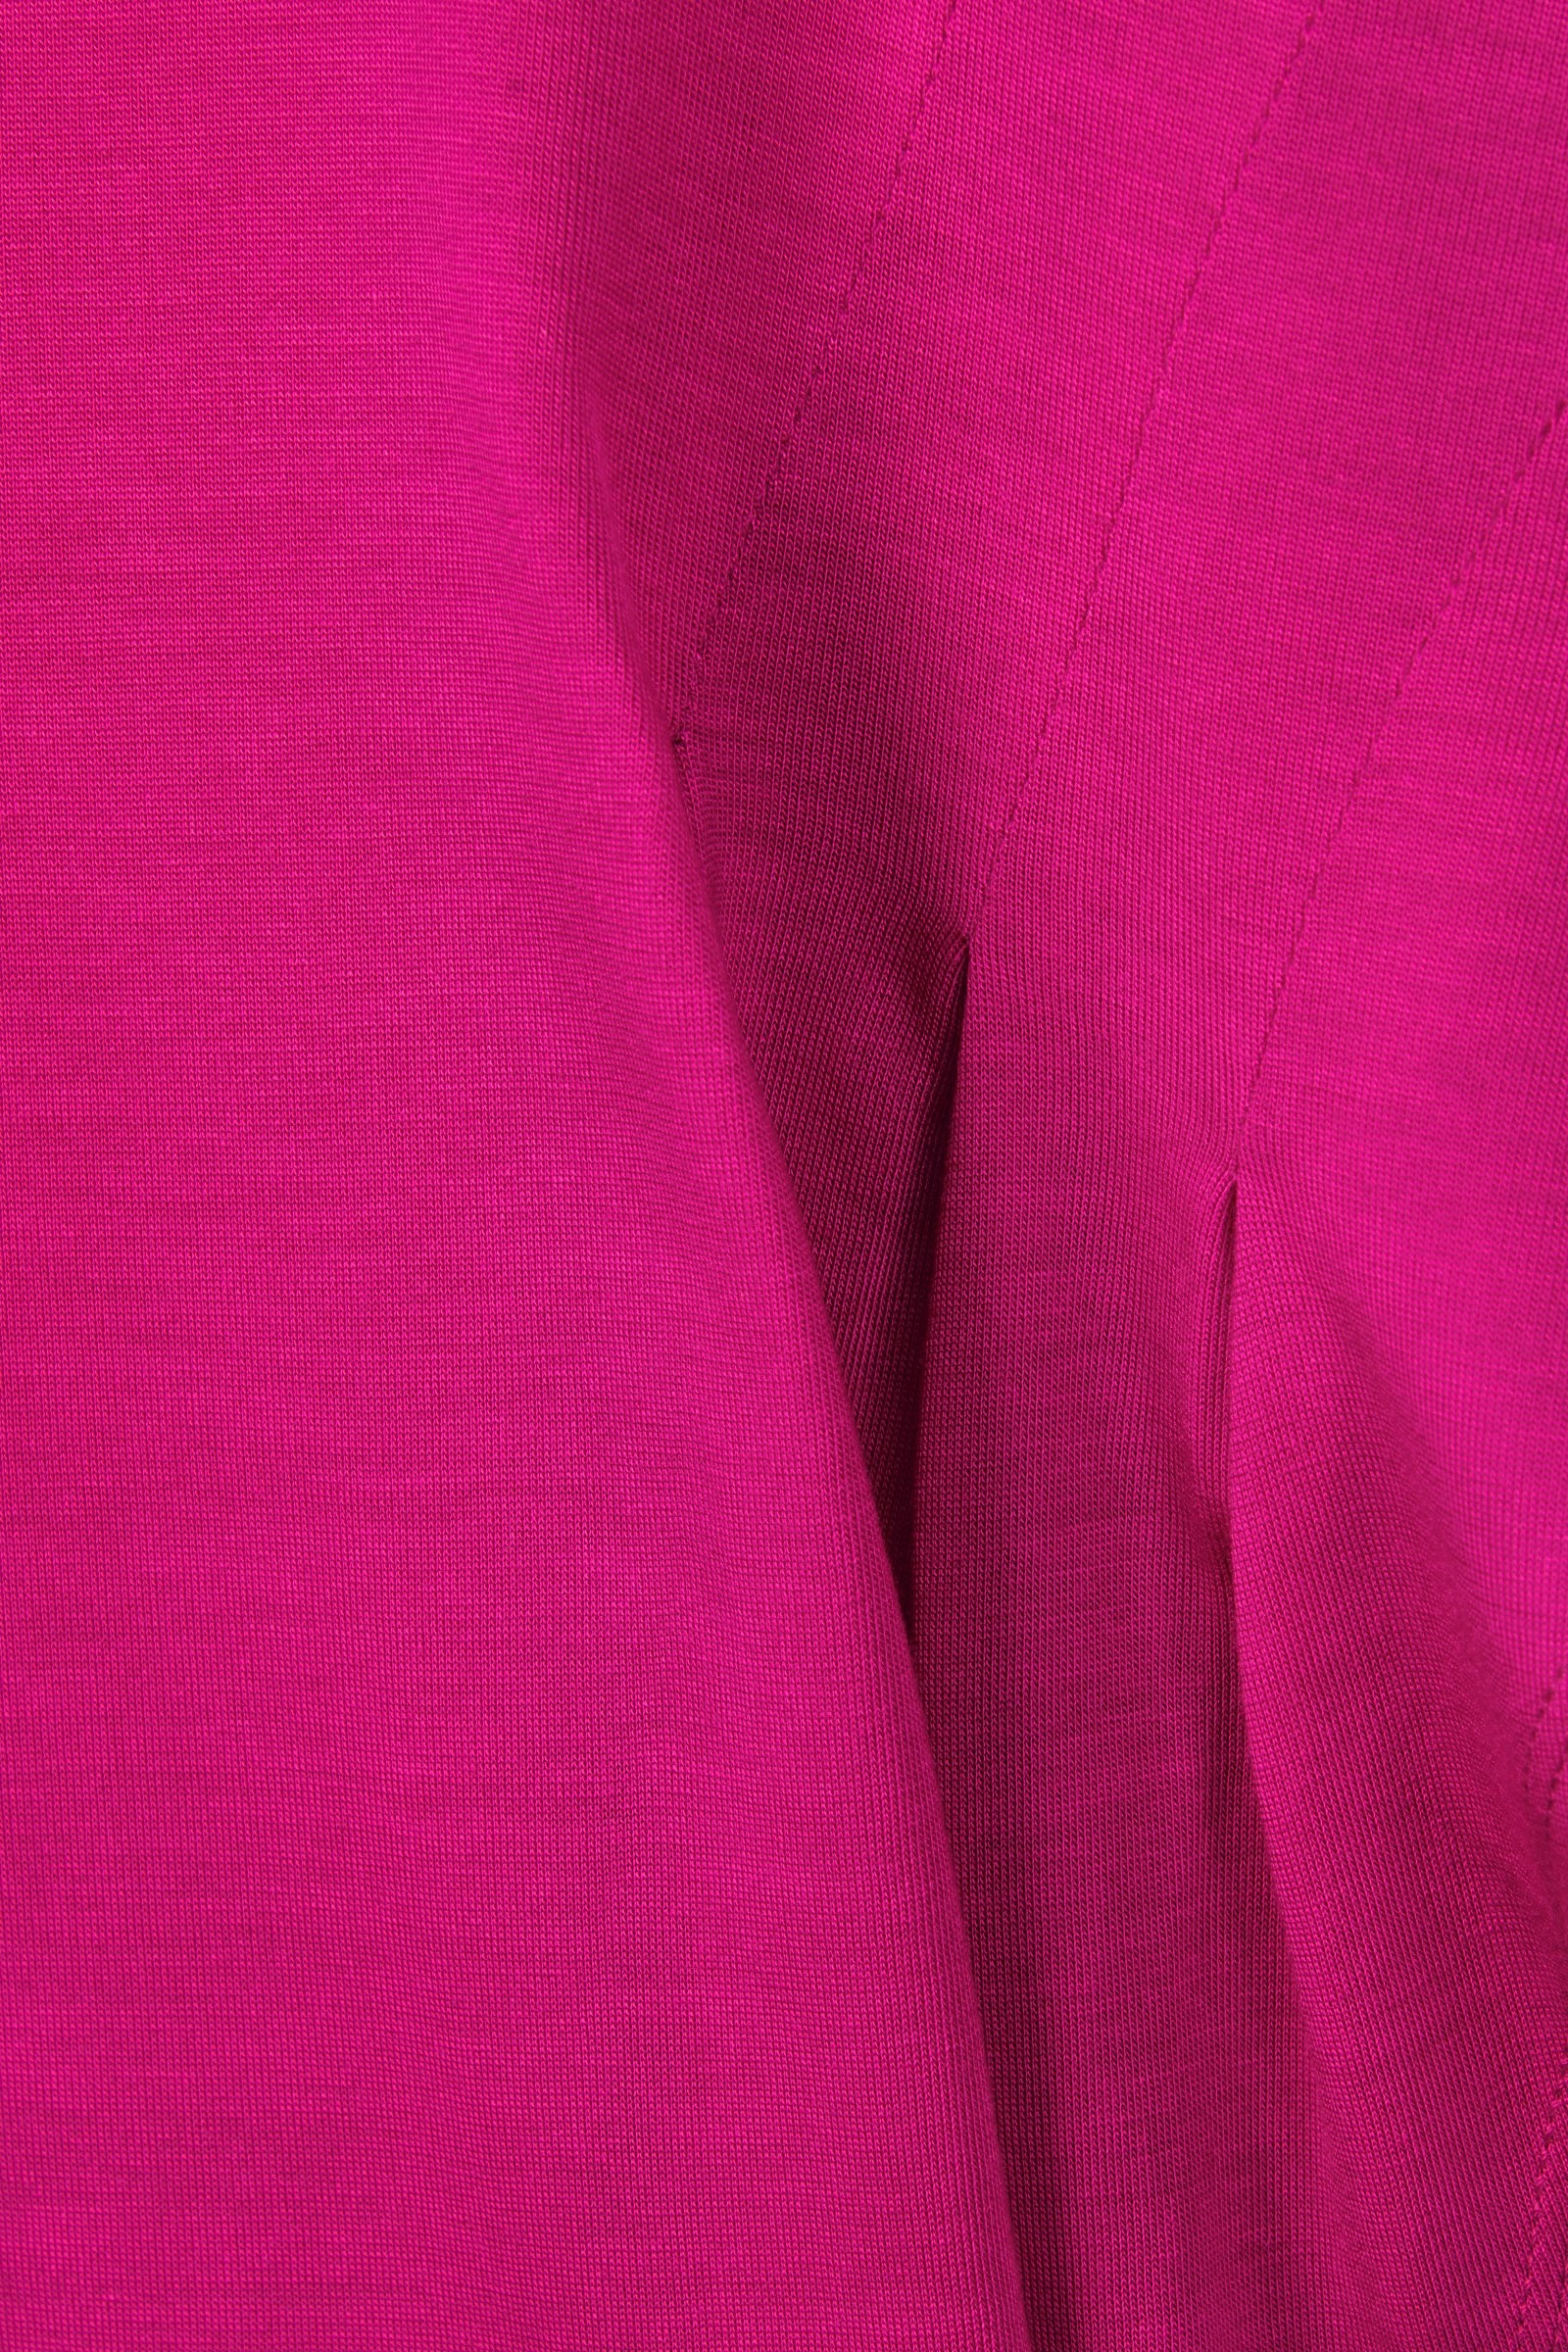 CKS Dames - JAZZ - t-shirt short sleeves - pink